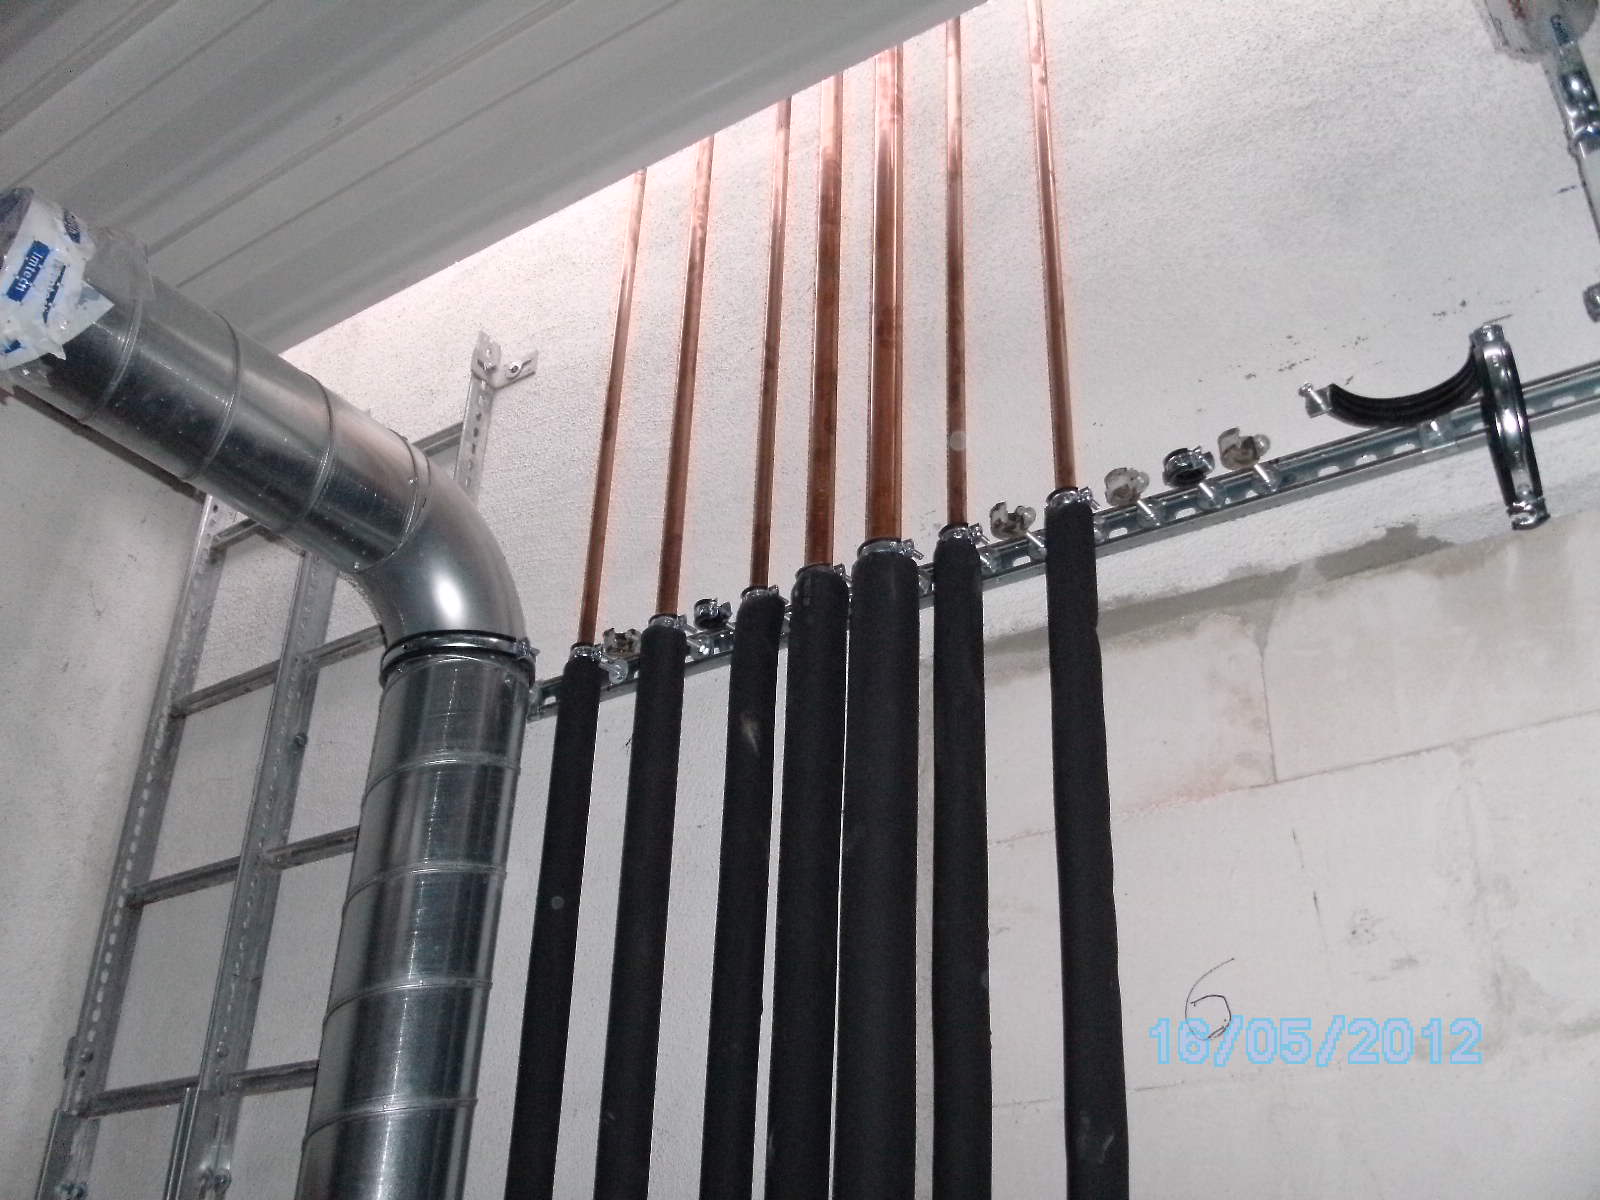 Einige Rohre innerhalb eines Wartungsraum, Teil eines Kühlungssystems von Maik Werner - Kälte und Klimatechnik